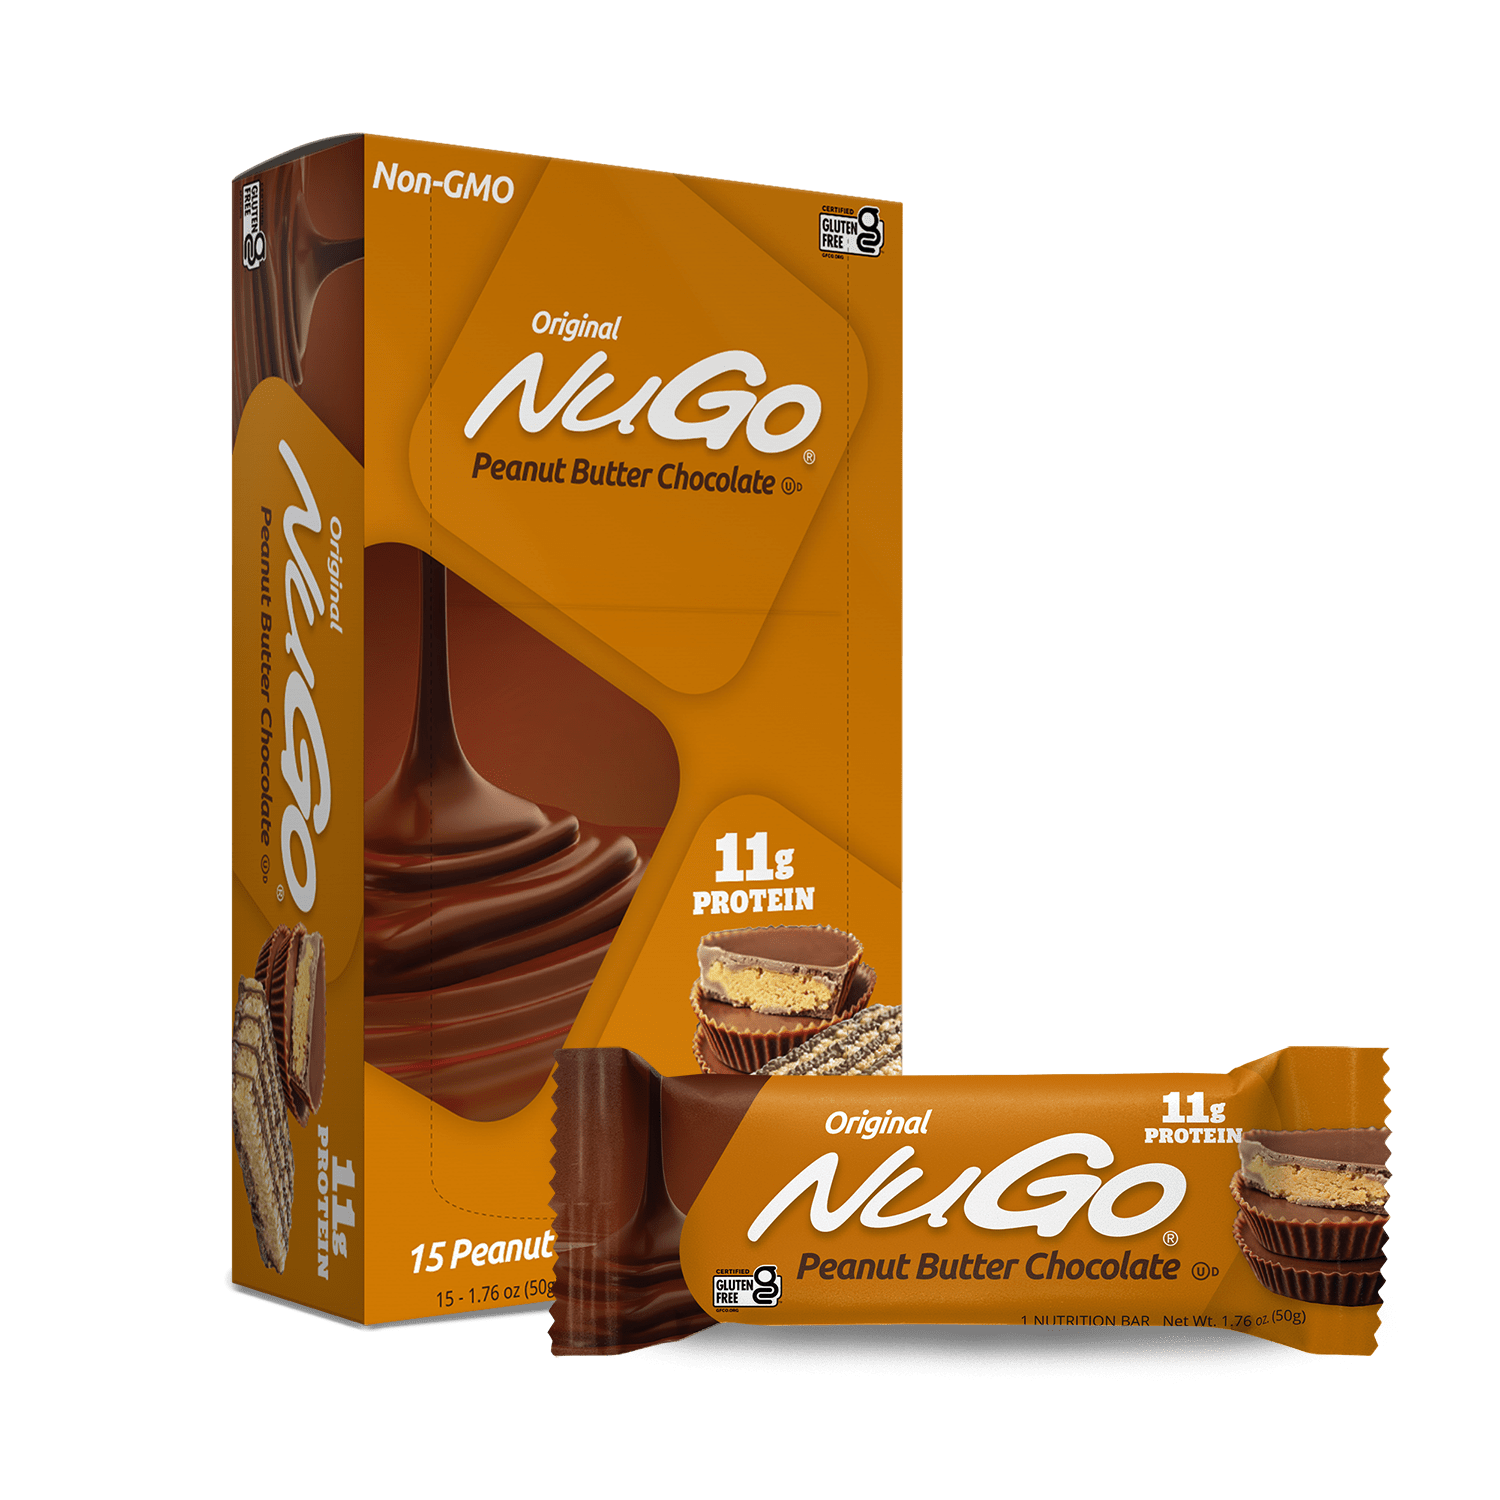 NuGo Original Peanut Butter Chocolate Bar and Box